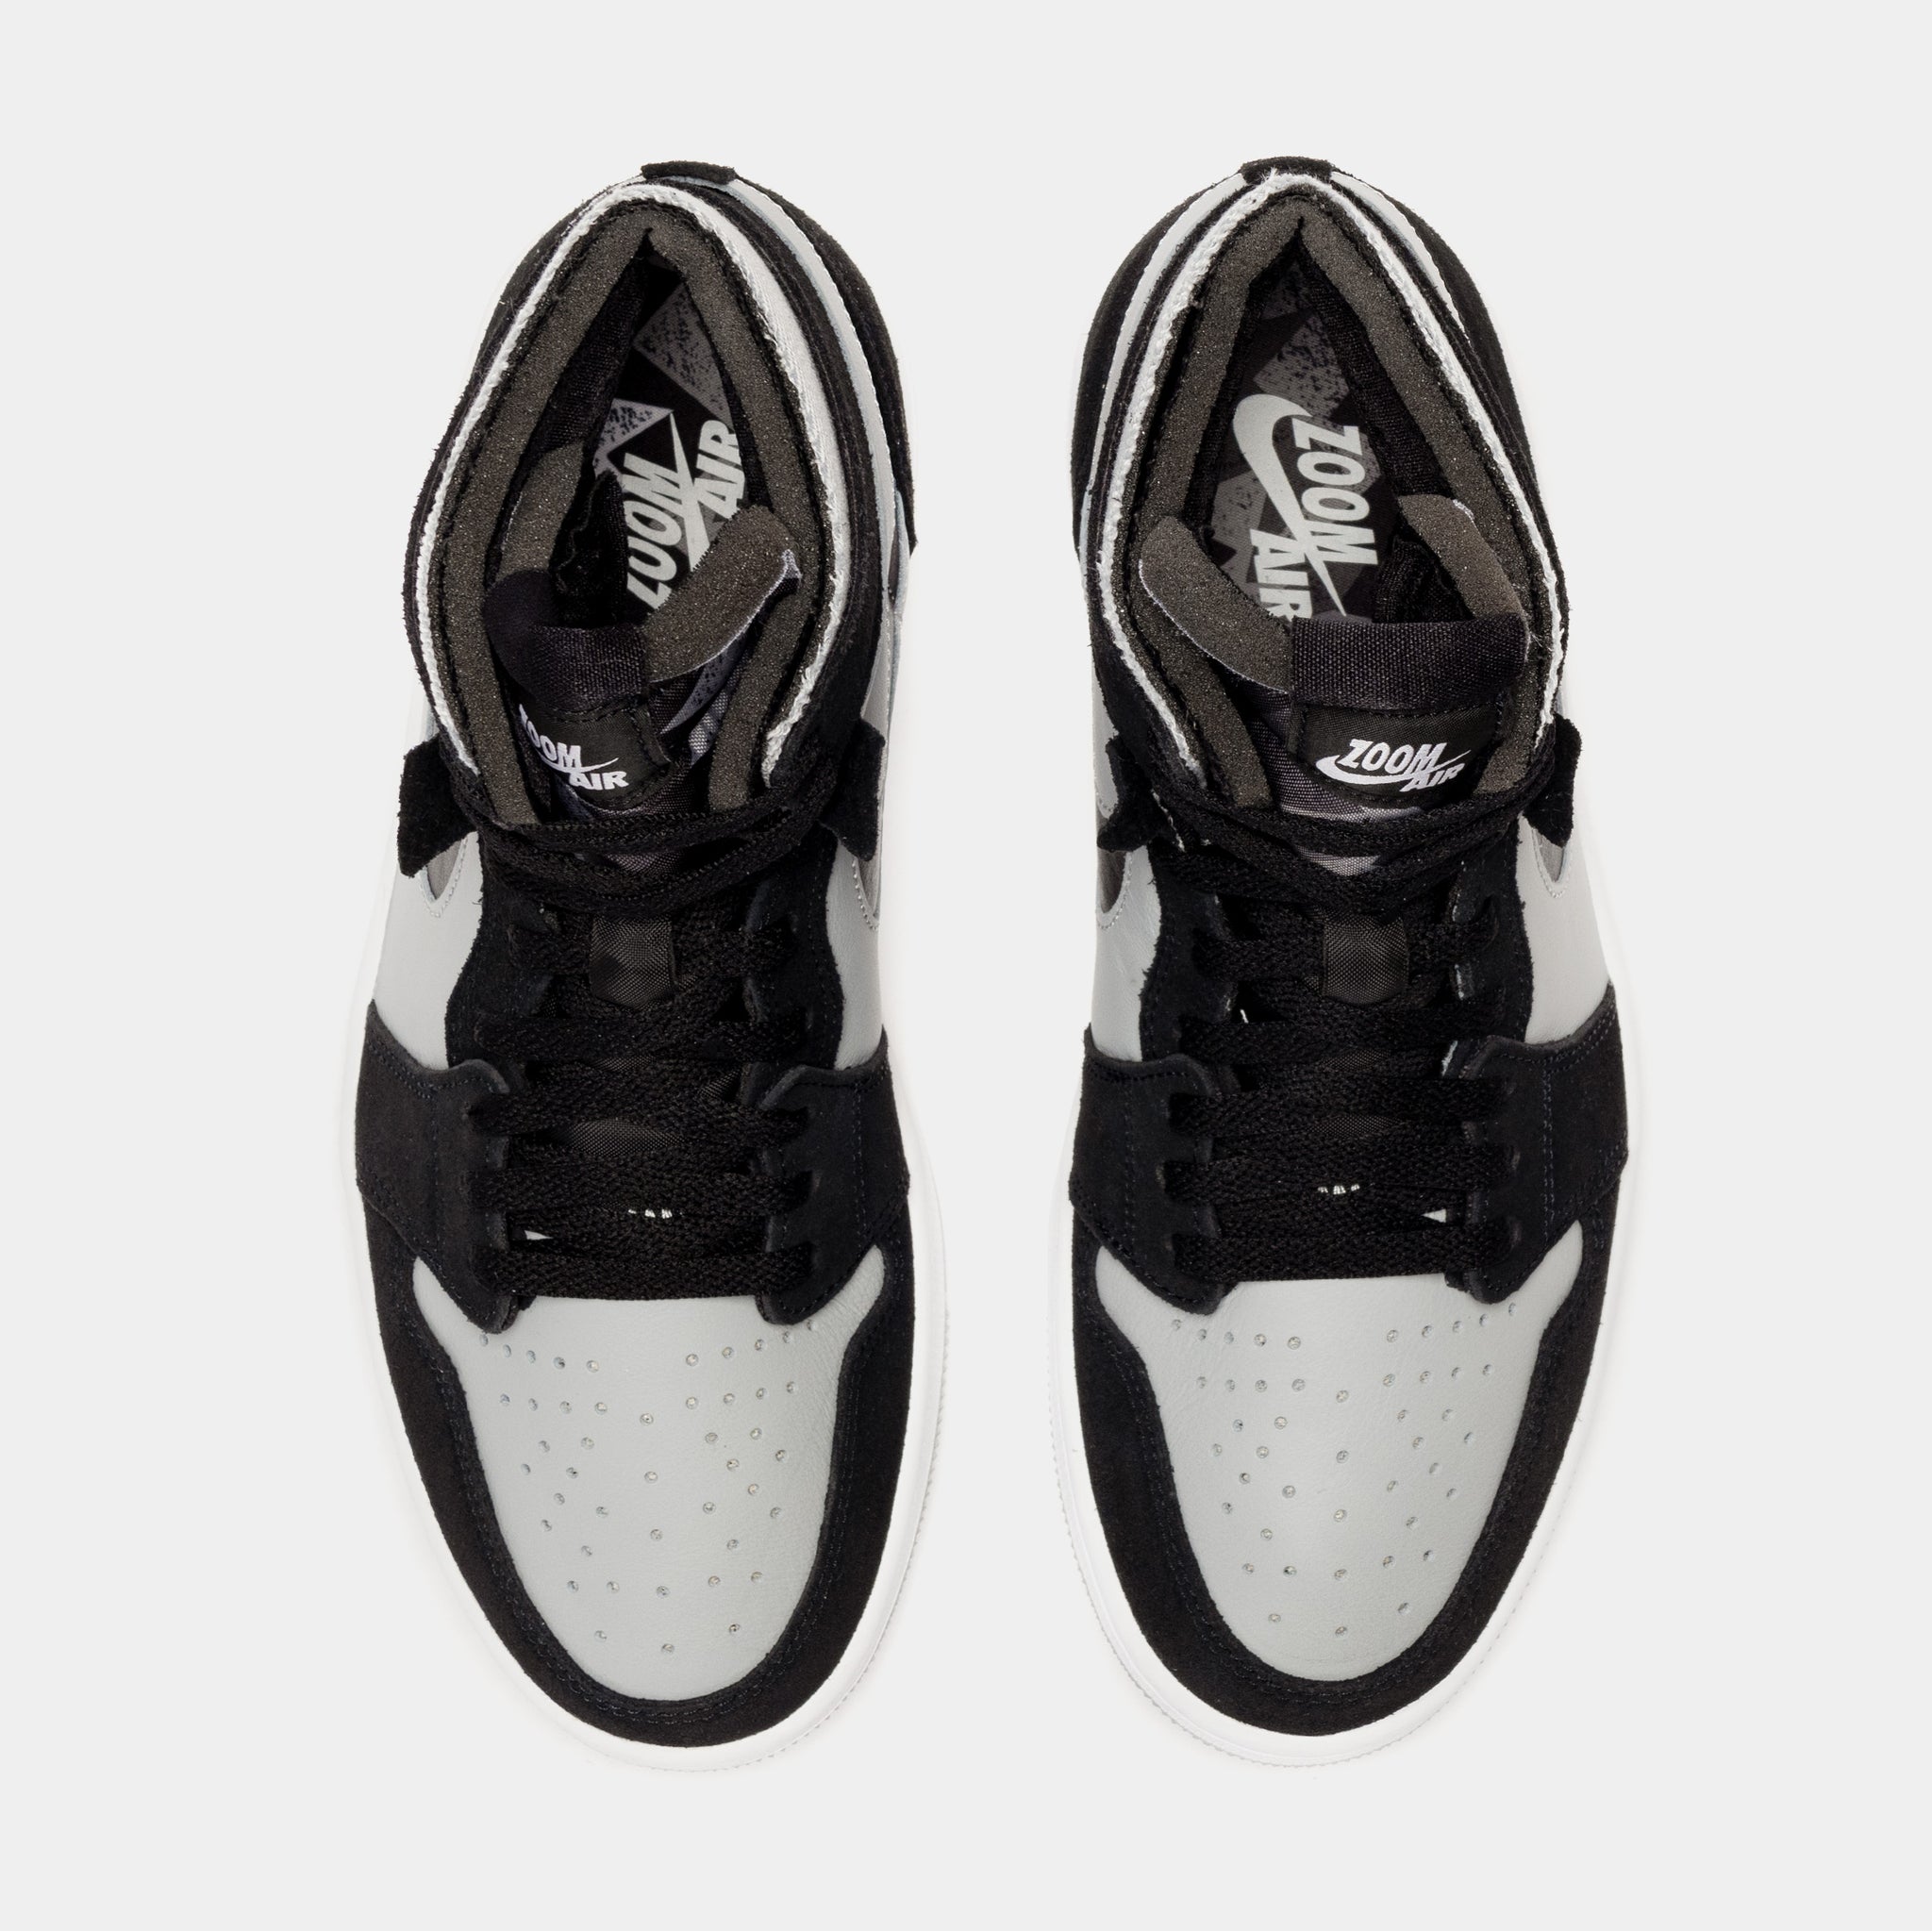 Nike Air Jordan 1 Zoom CMFT Black Light Smoke Grey CT0978-001 Mens